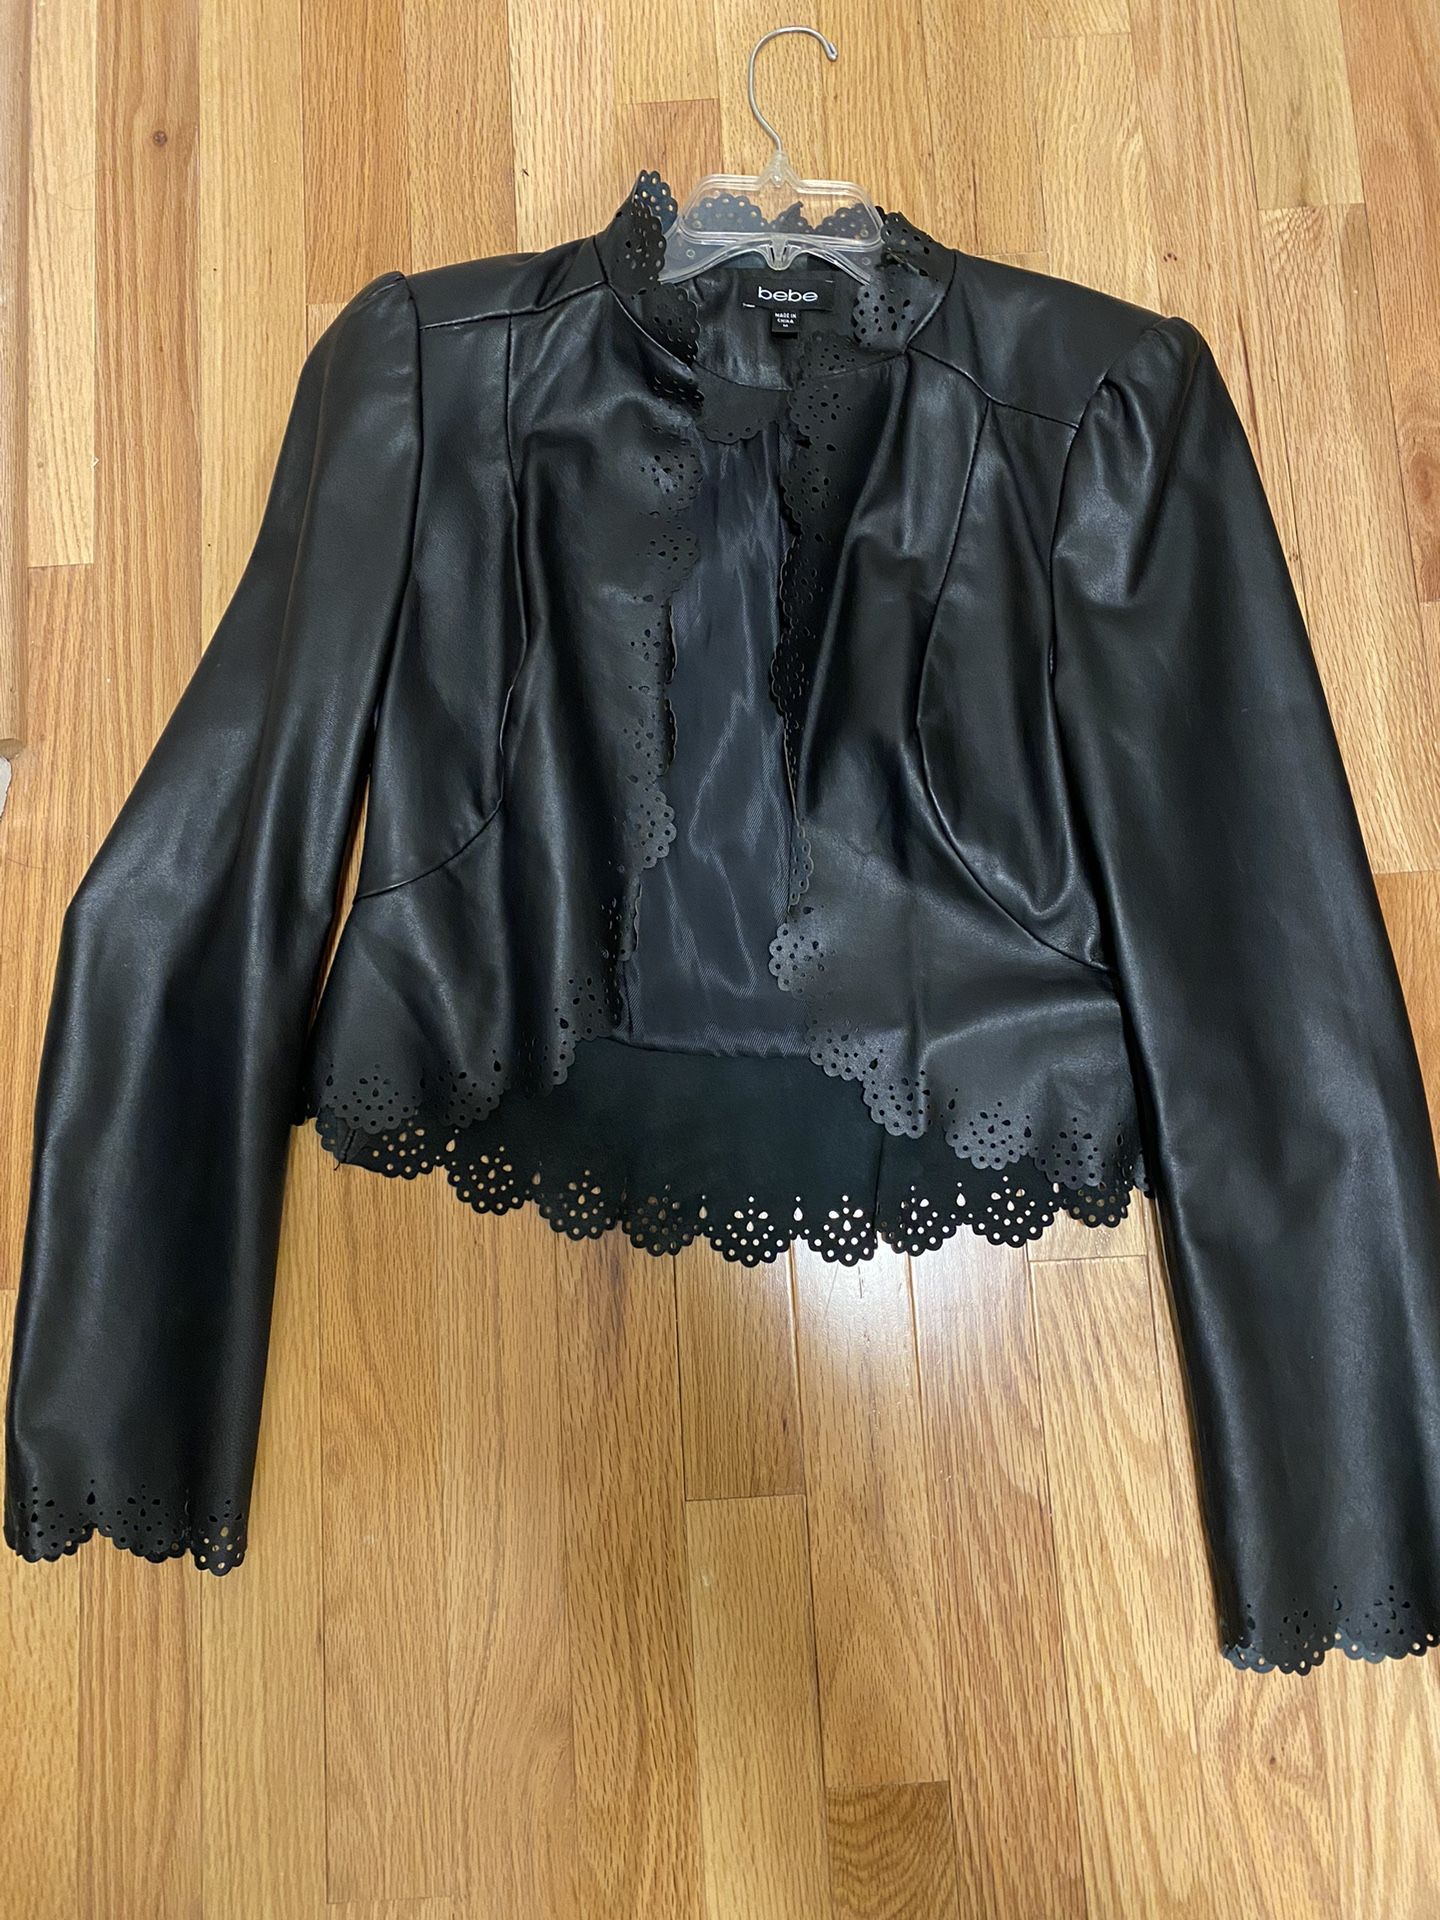 Bebe Cropped  Black Leather Jacket 